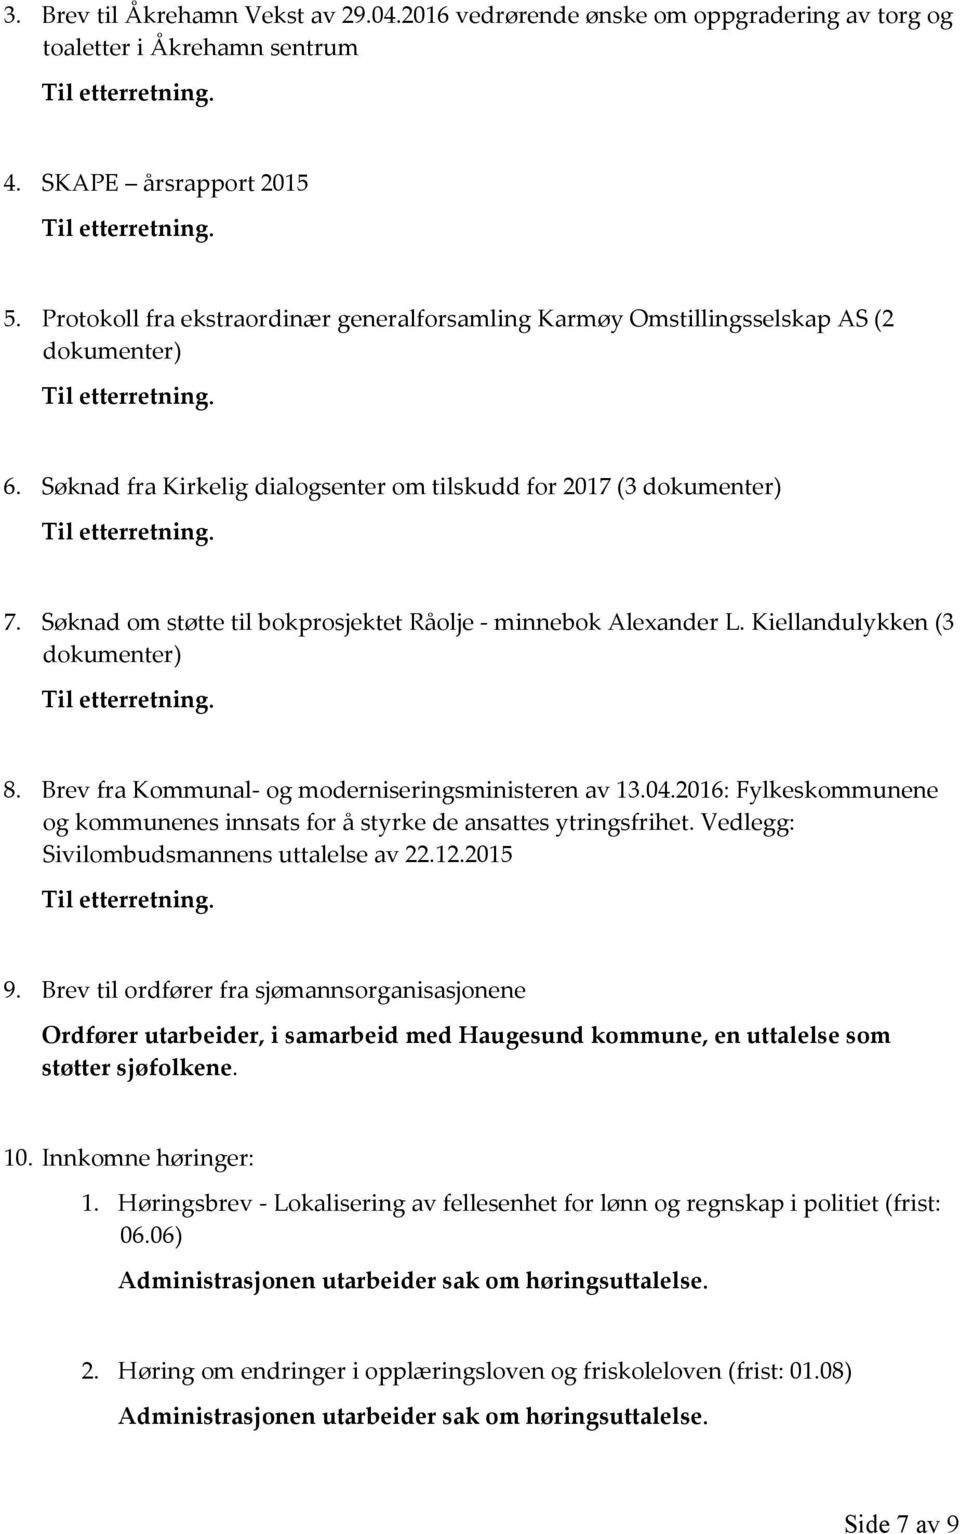 Søknad om støtte til bokprosjektet Råolje - minnebok Alexander L. Kiellandulykken (3 dokumenter) 8. Brev fra Kommunal- og moderniseringsministeren av 13.04.